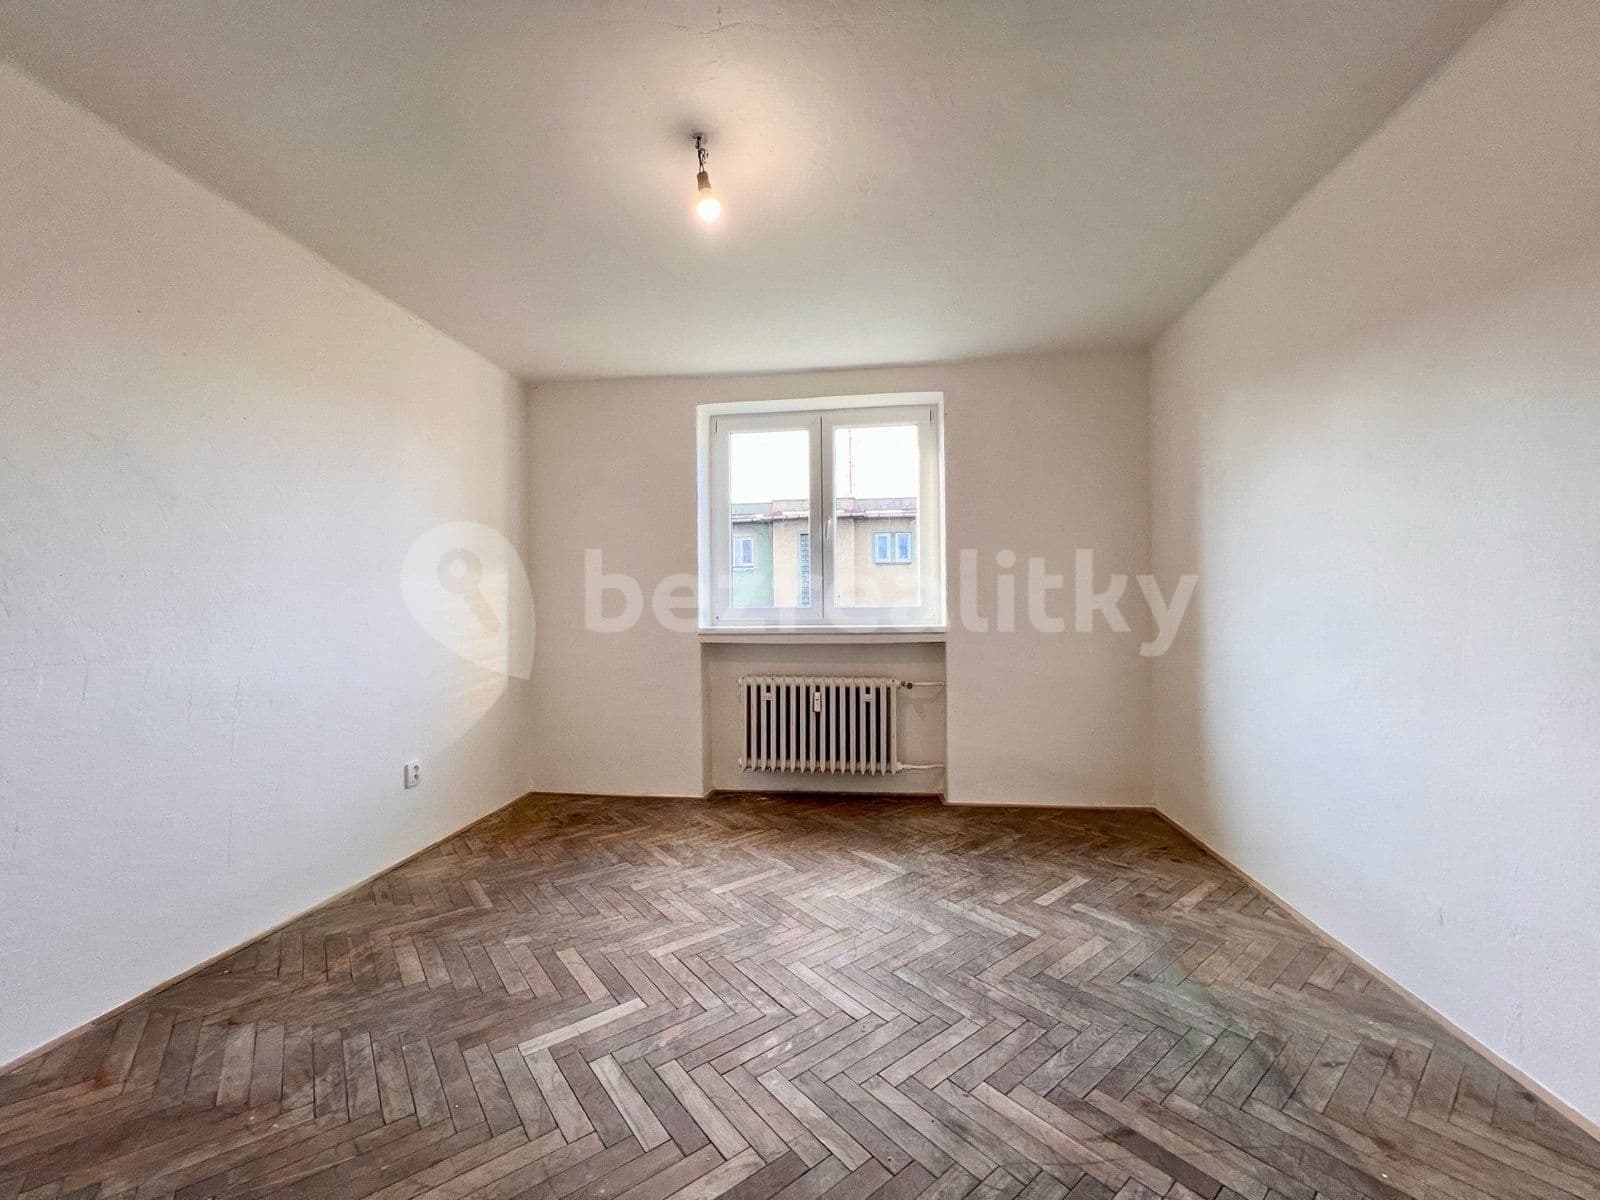 2 bedroom flat to rent, 60 m², Technická, Ostrava, Moravskoslezský Region